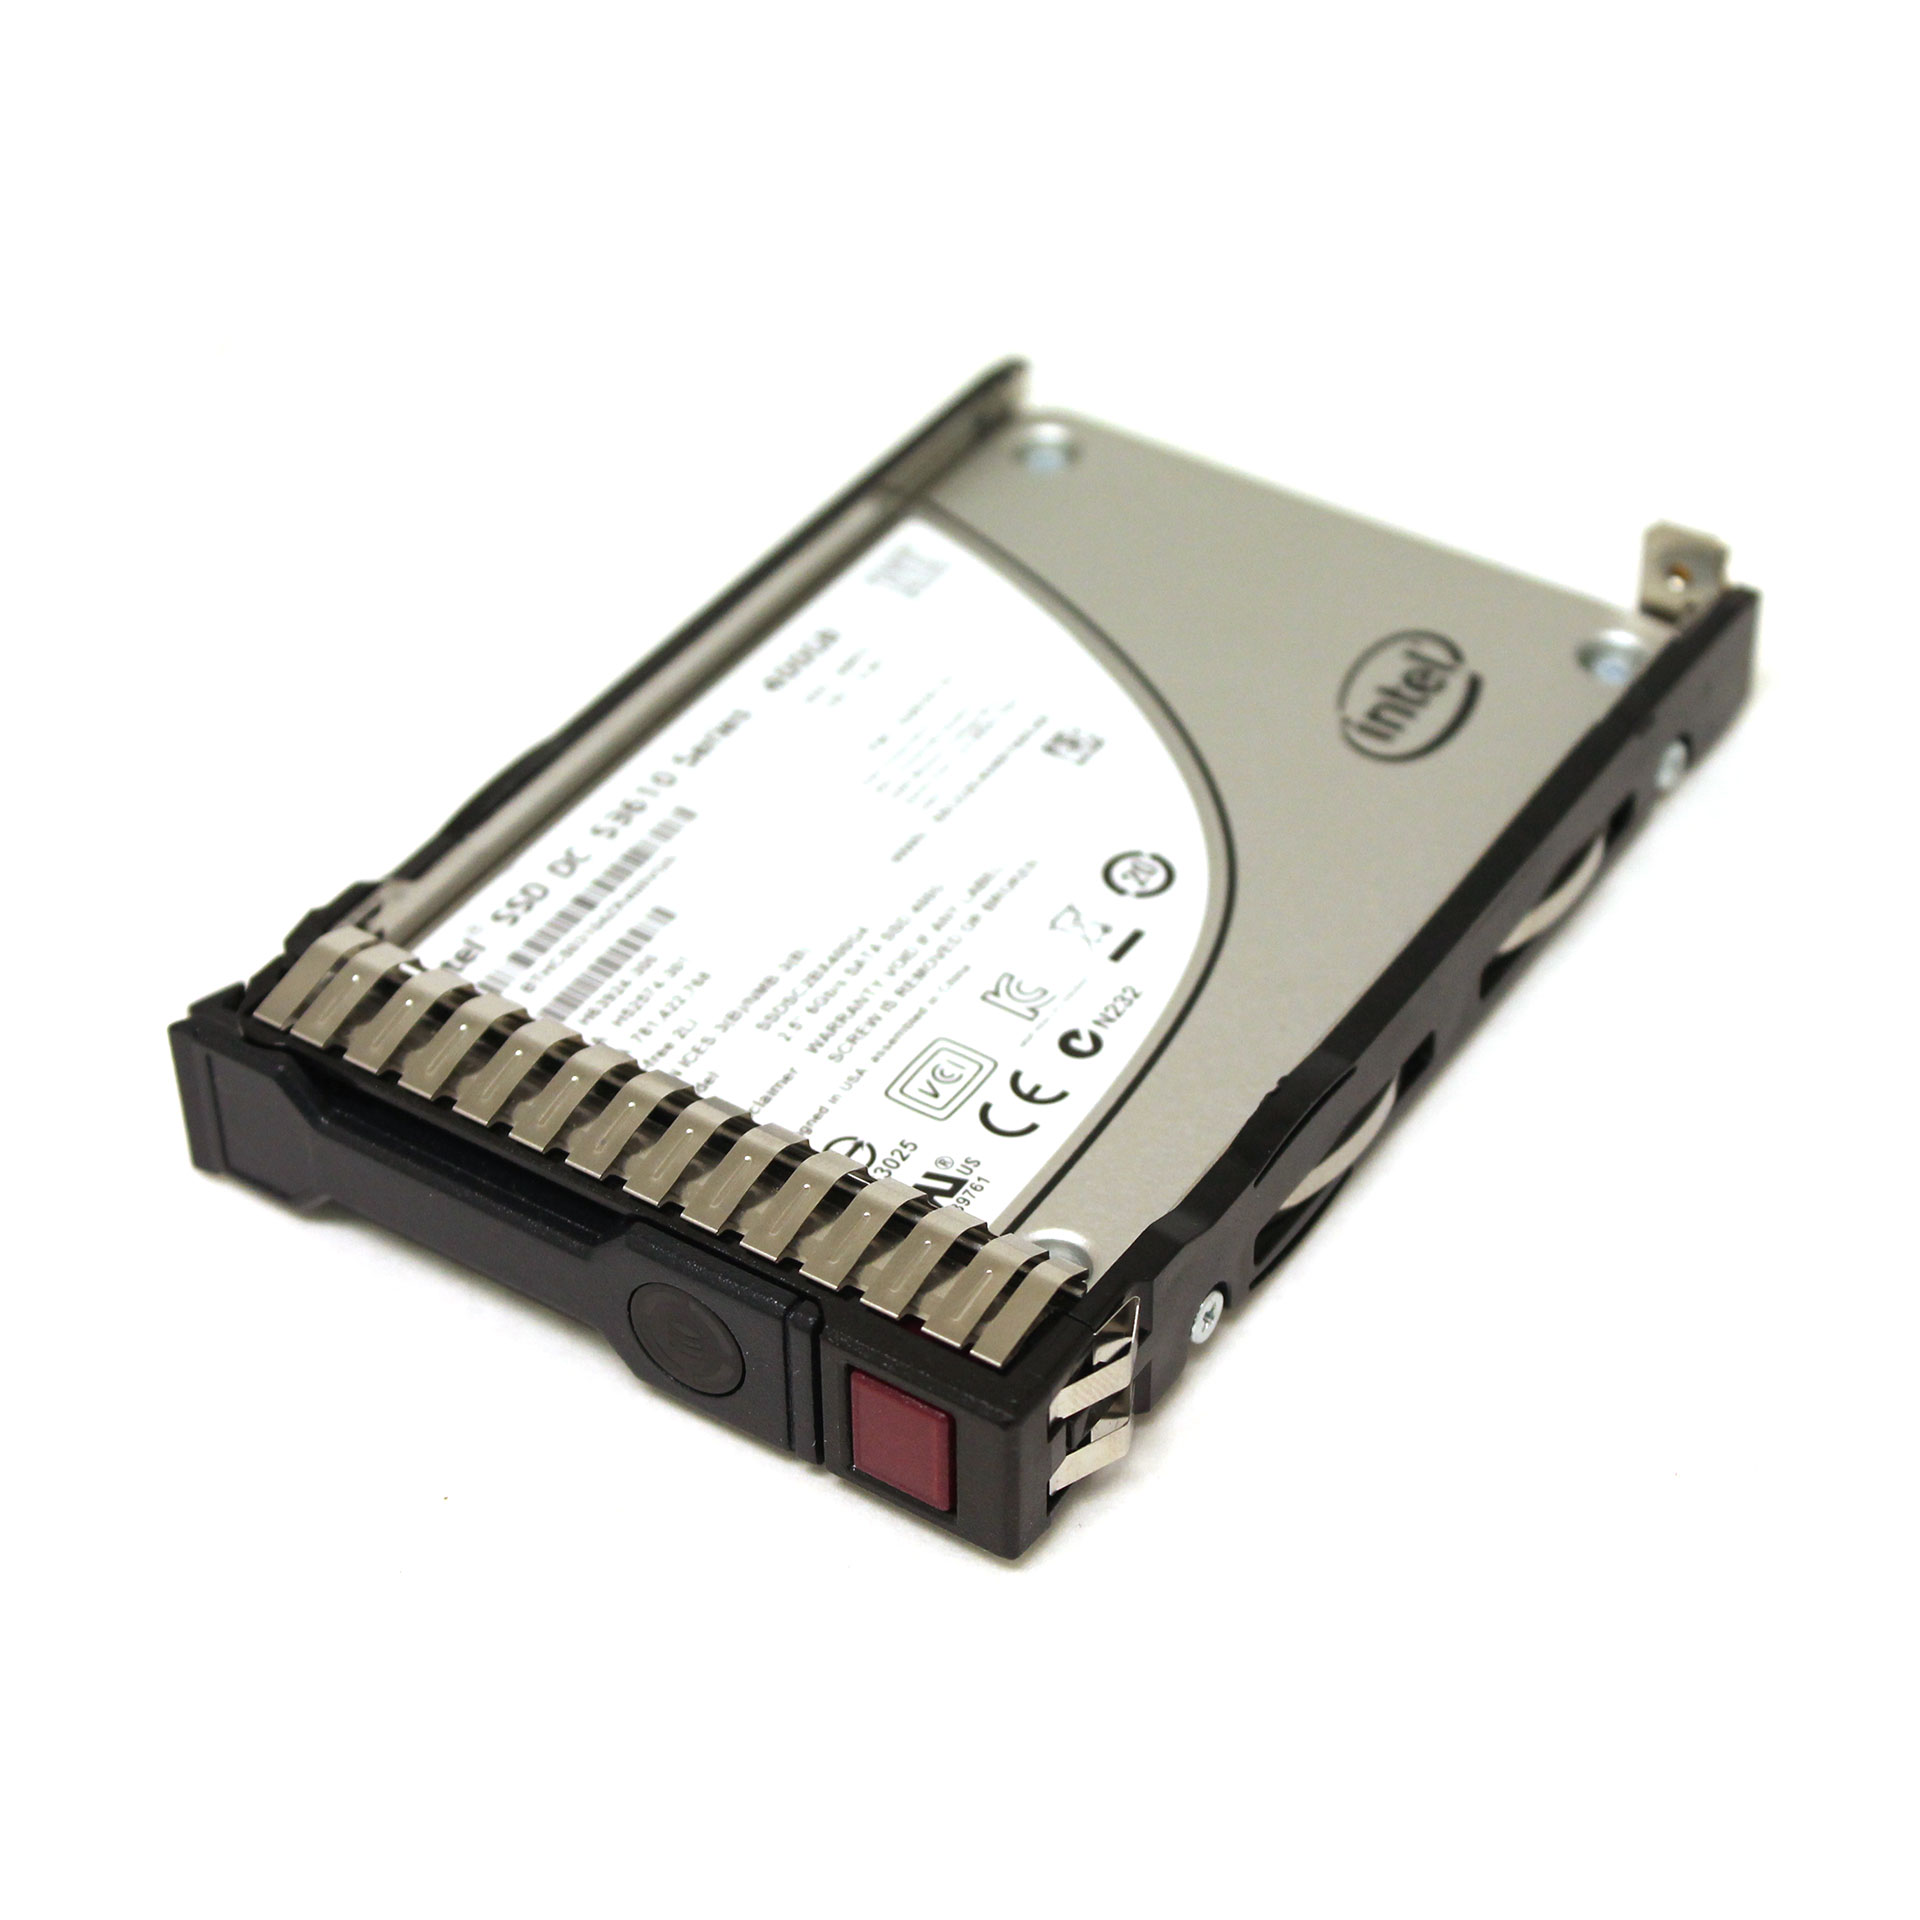 Intel SSD DC S3610 Series 400GB SSDSC2BX400G4 2.5" SATA 6Gbs MLC